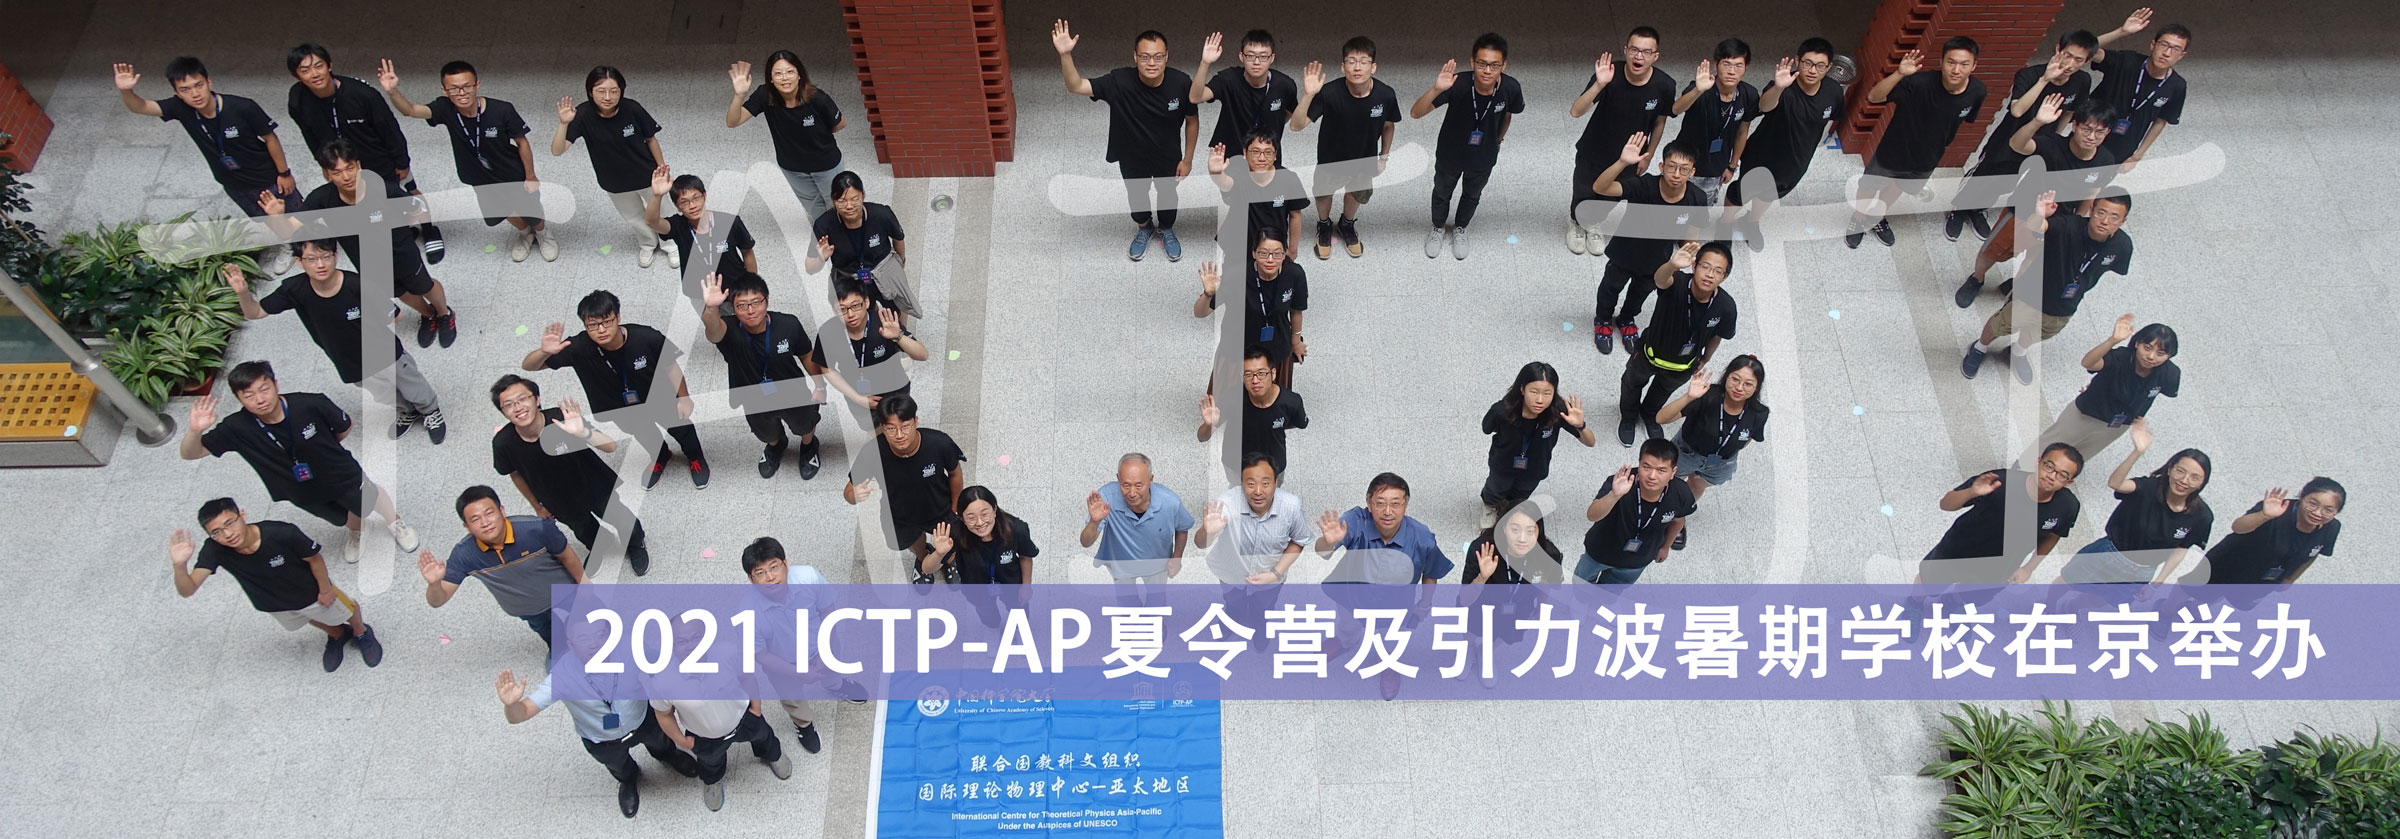 2021 ICTP-AP夏令营及引力波暑期学校在京举办